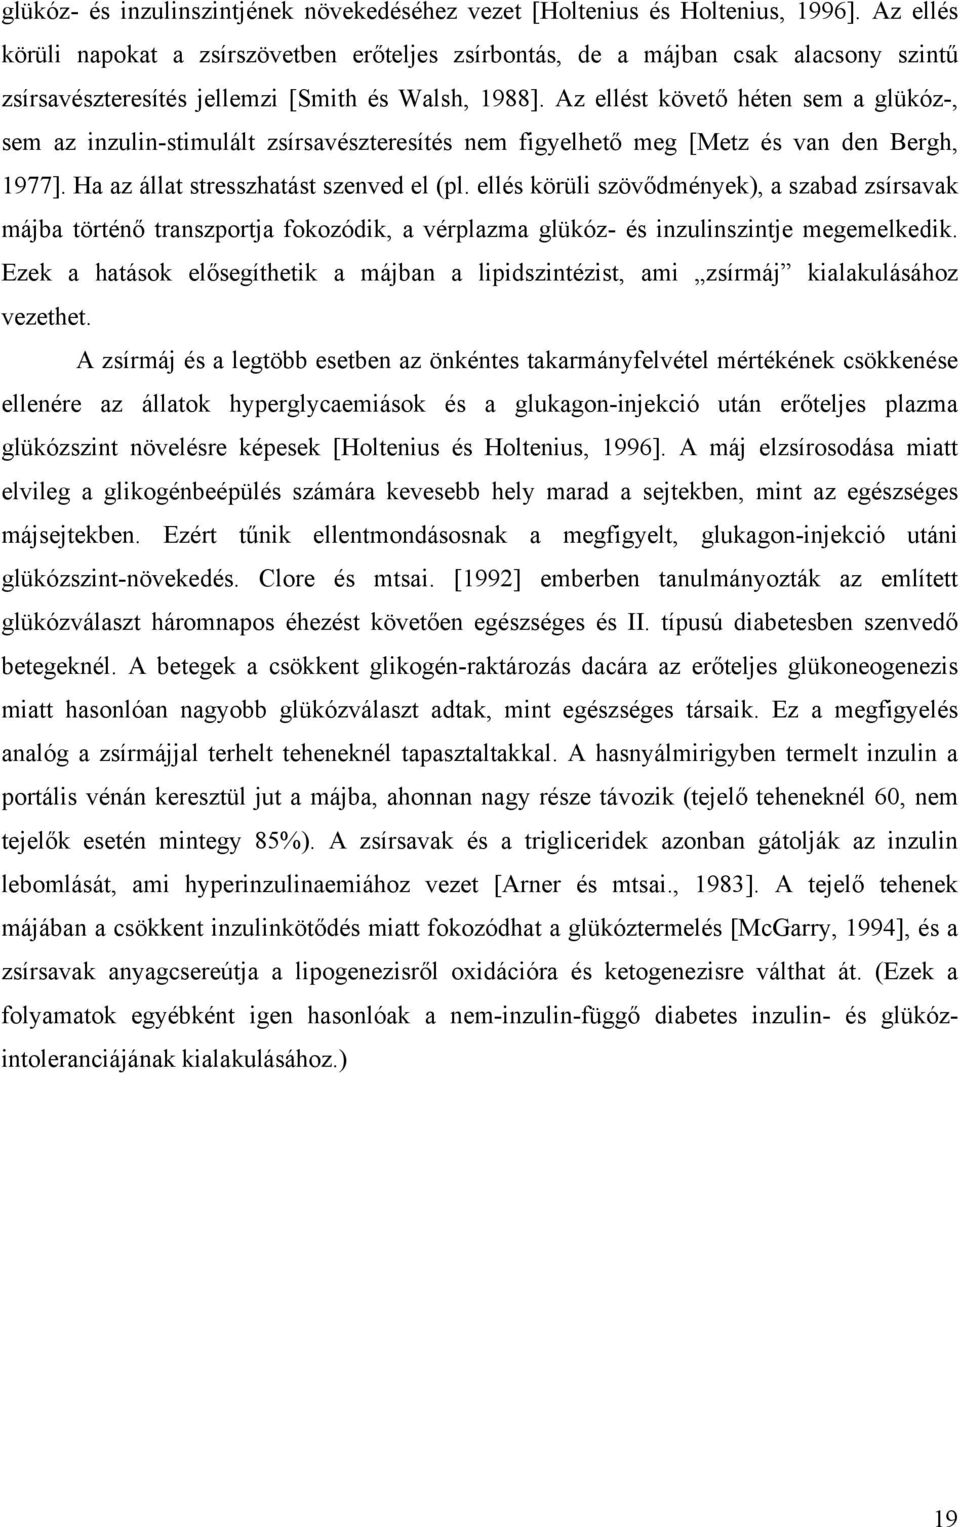 Az ellést követő héten sem a glükóz-, sem az inzulin-stimulált zsírsavészteresítés nem figyelhető meg [Metz és van den Bergh, 1977]. Ha az állat stresszhatást szenved el (pl.